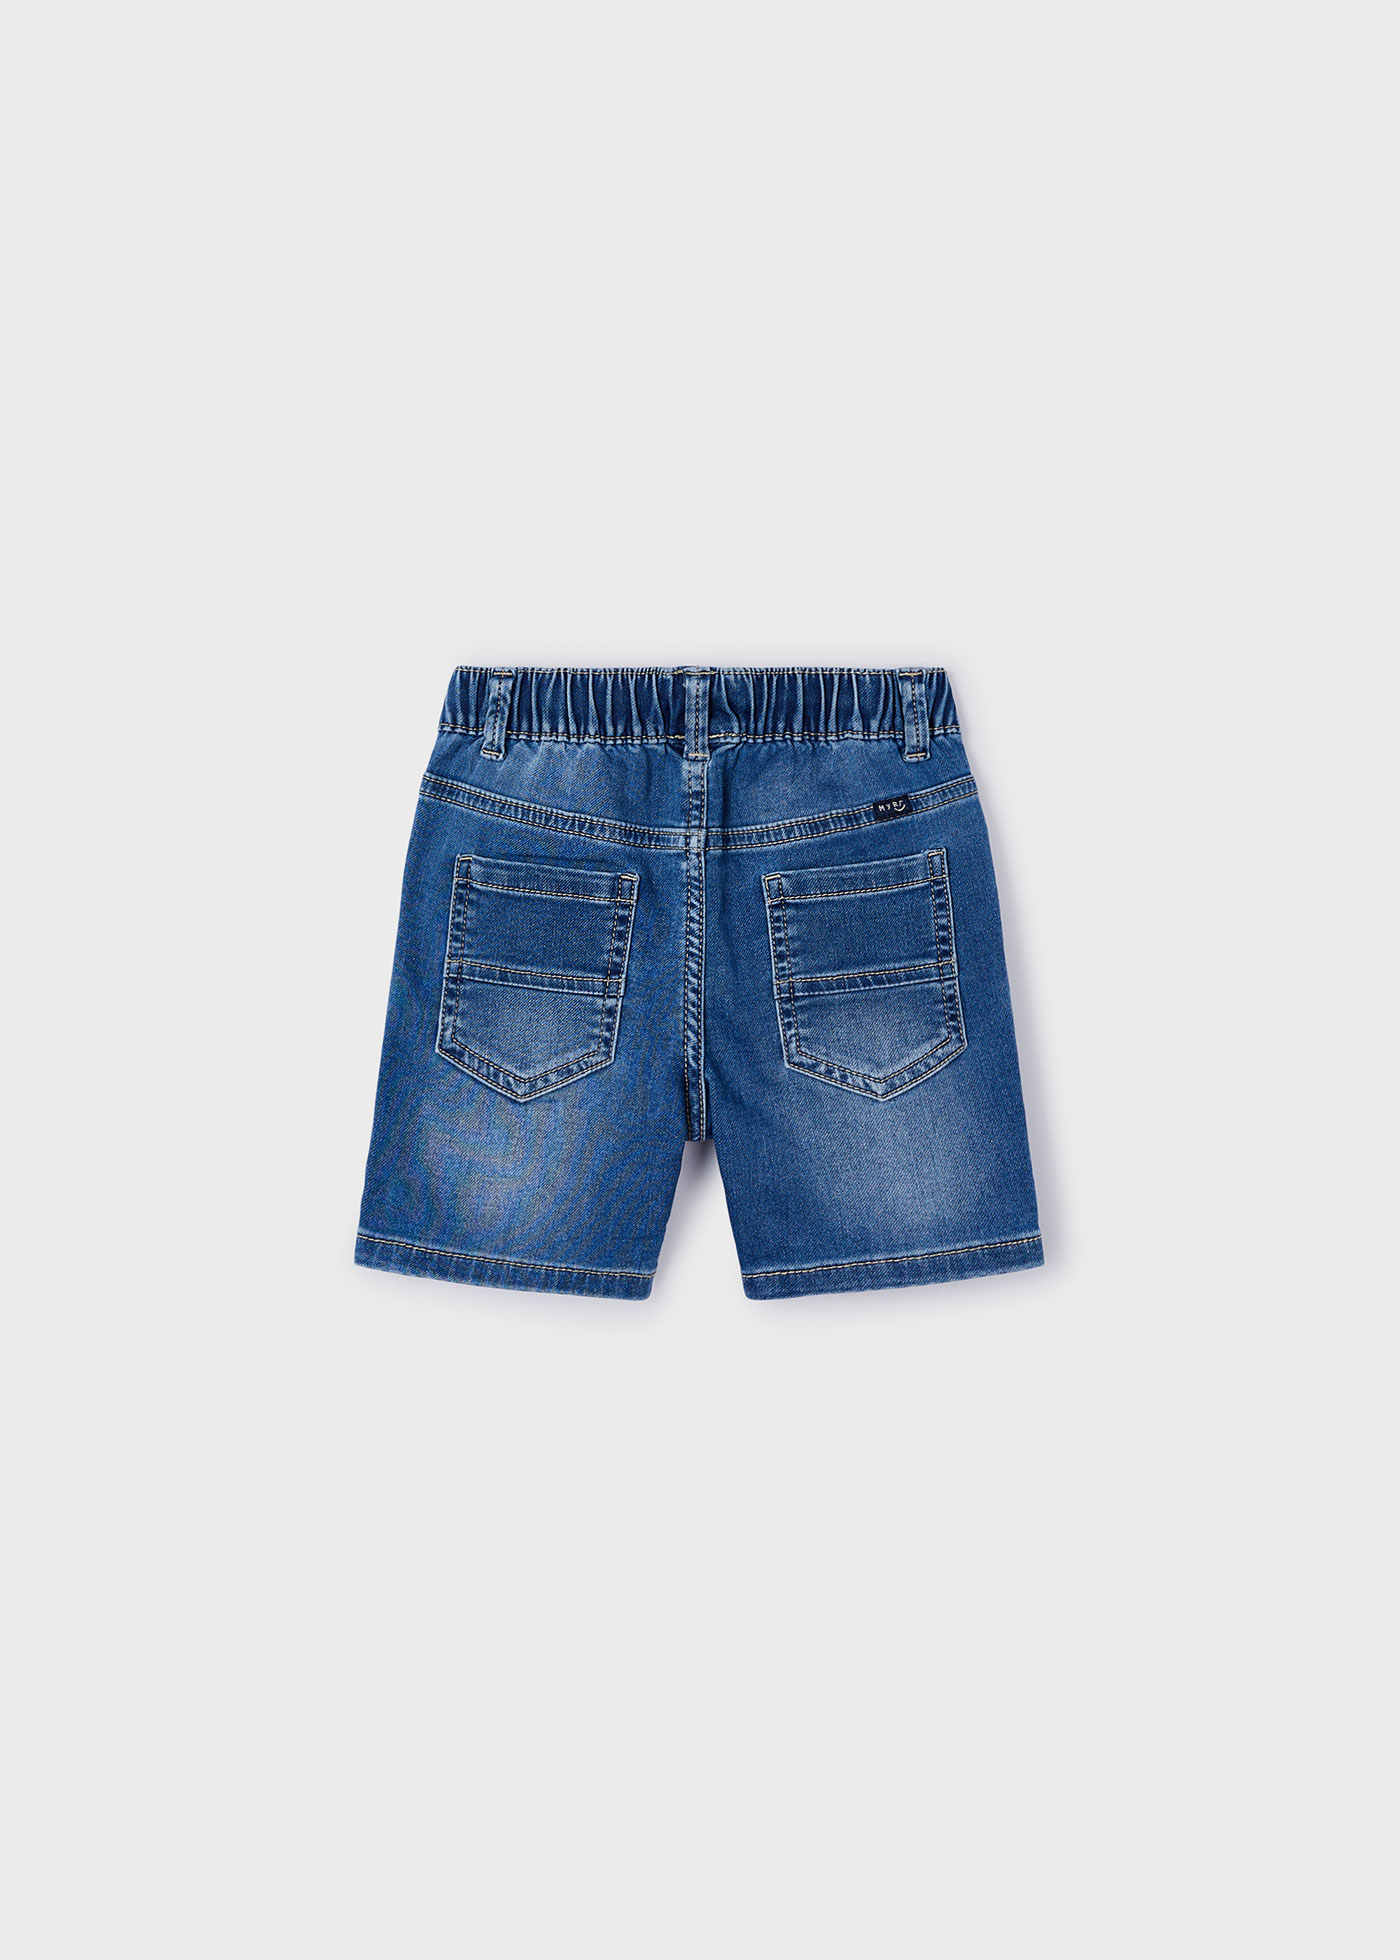 Jeans-Bermudas Better Cotton Jungen